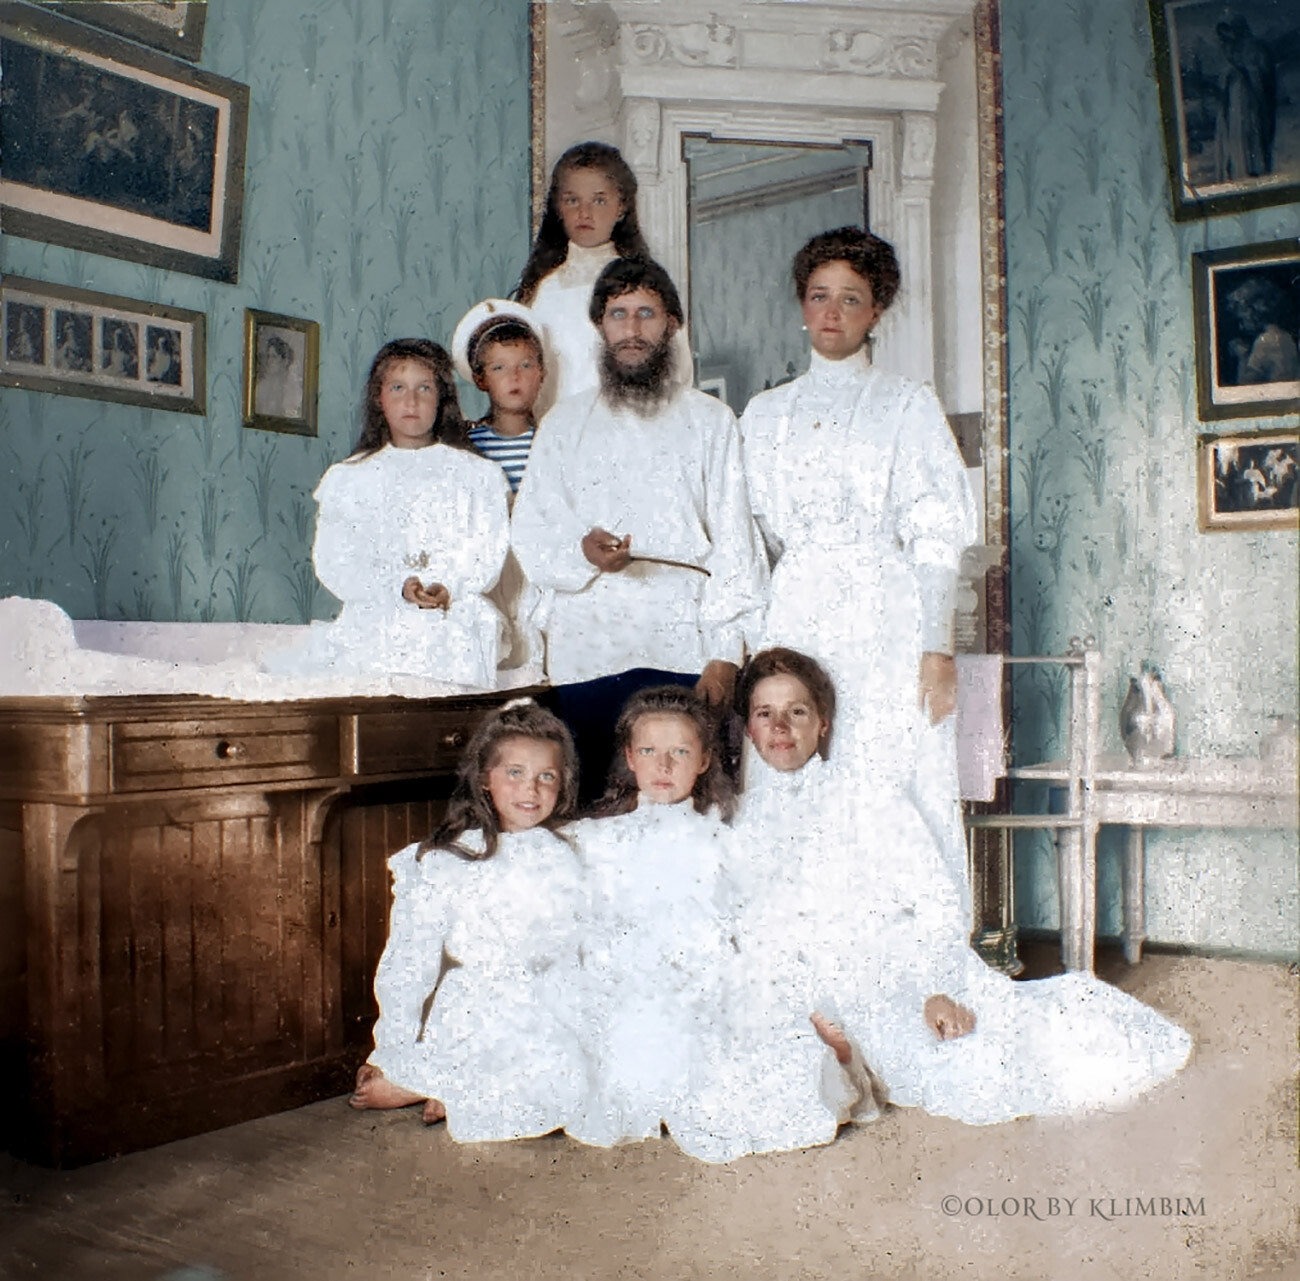 皇后、子供達、家庭教師の女性とともに映るラスプーチン。1908年、ツァールスコエ・セロー